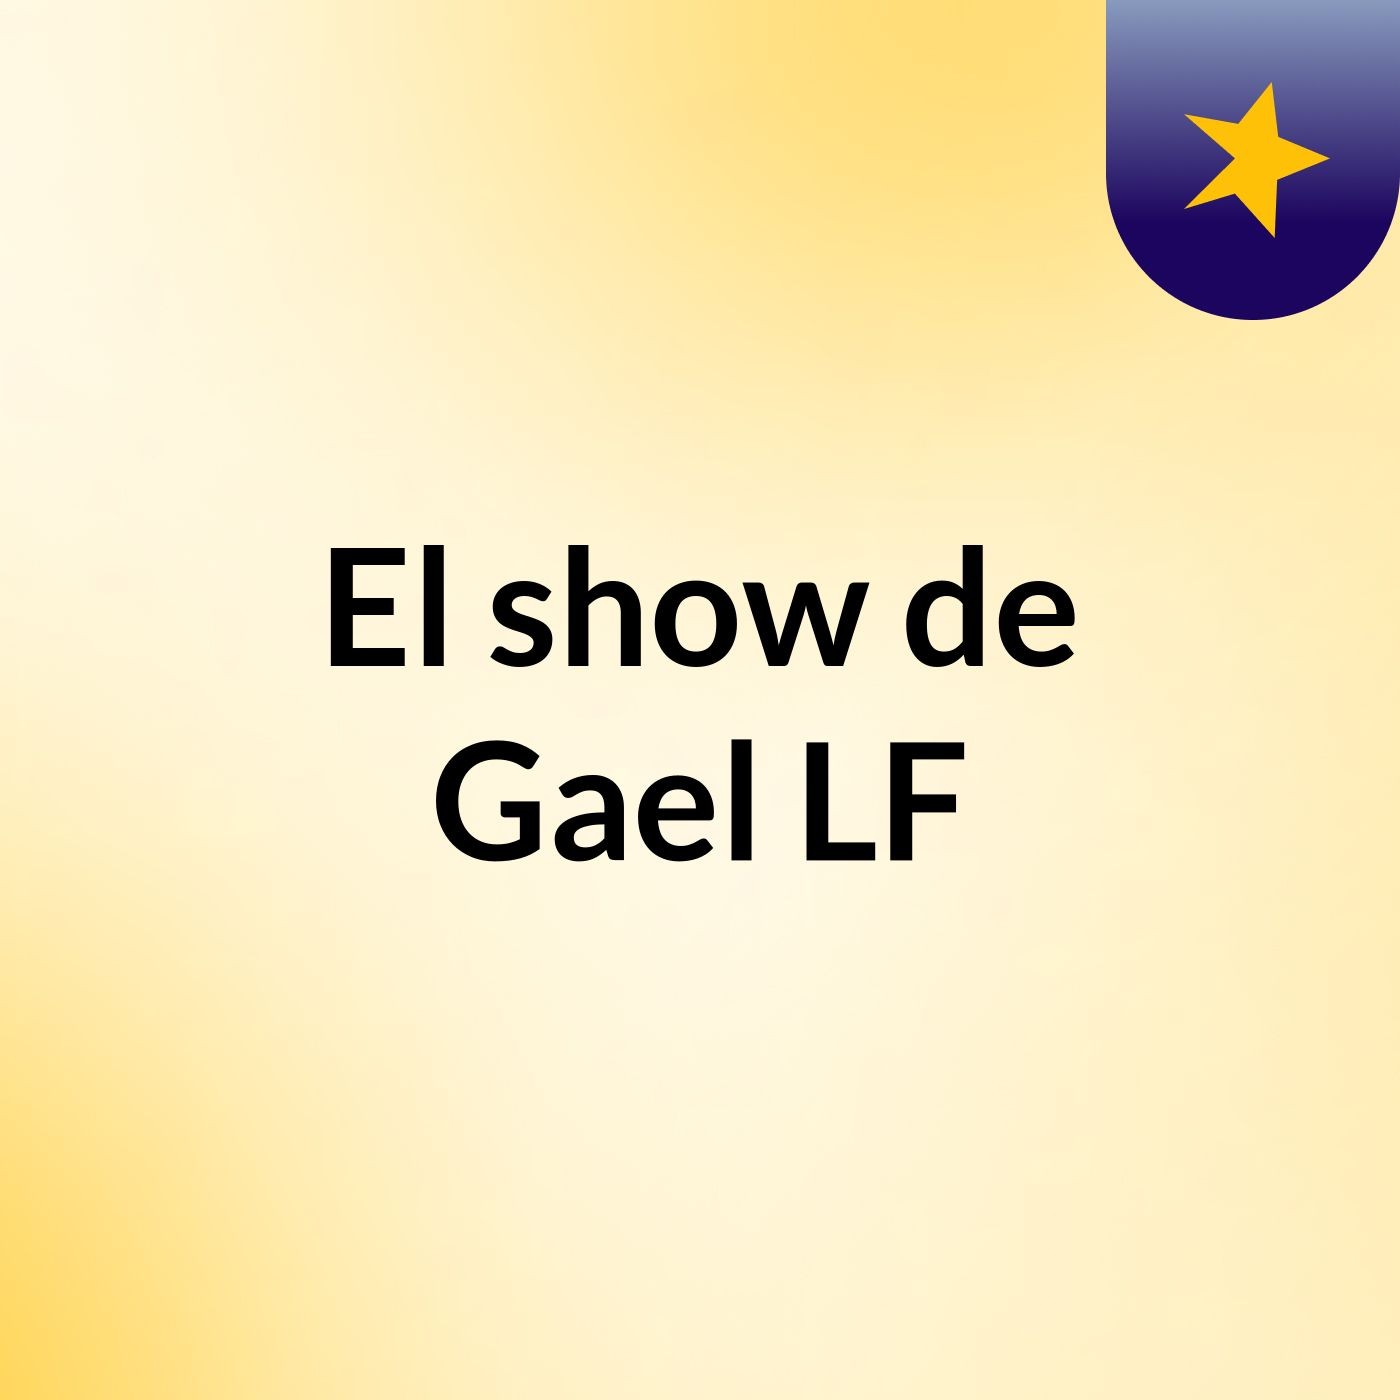 El show de Gael LF